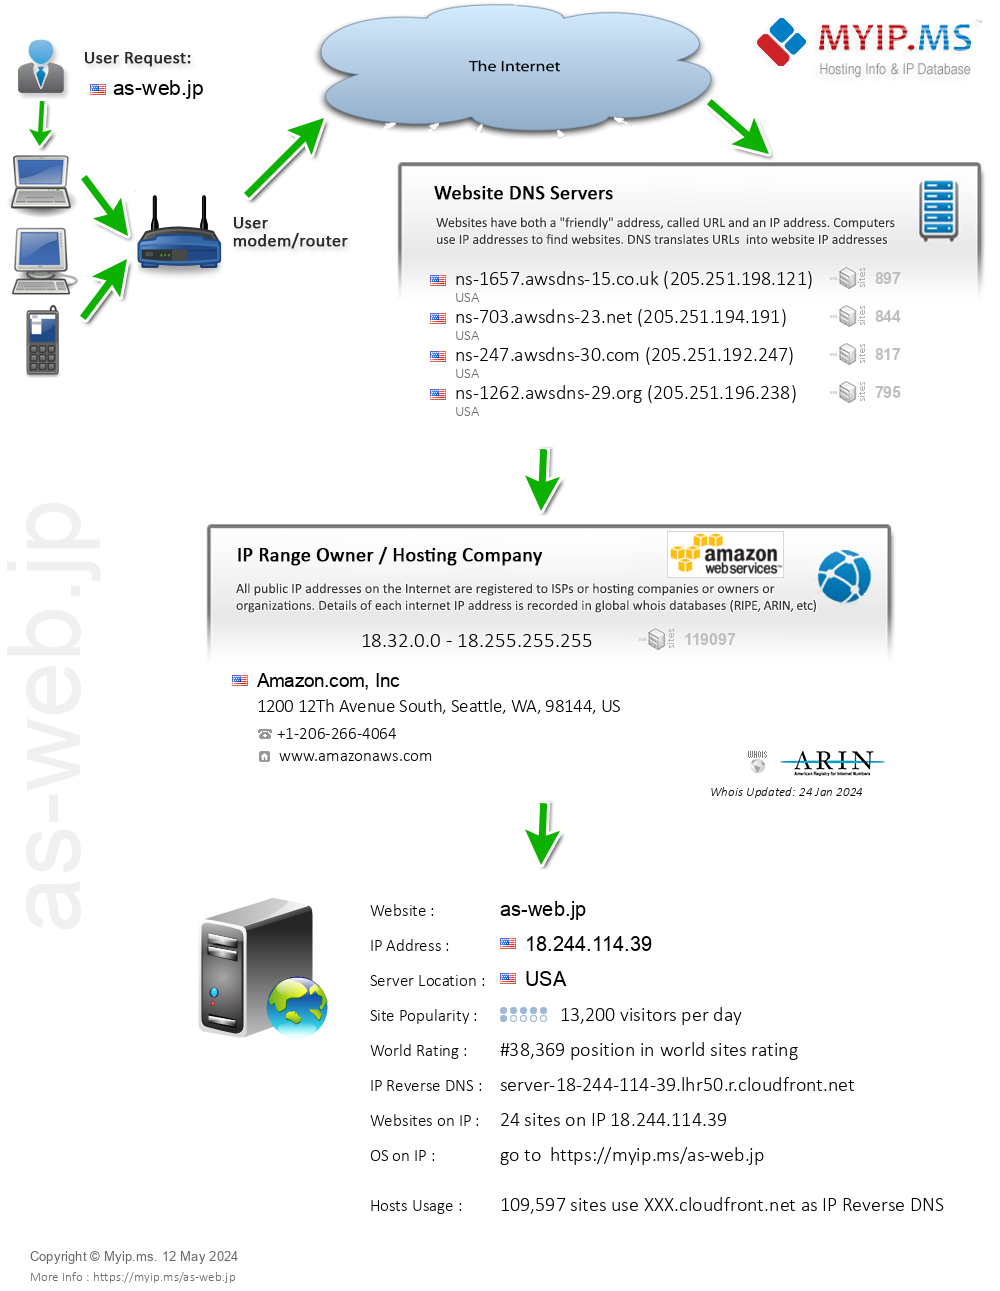 As-web.jp - Website Hosting Visual IP Diagram